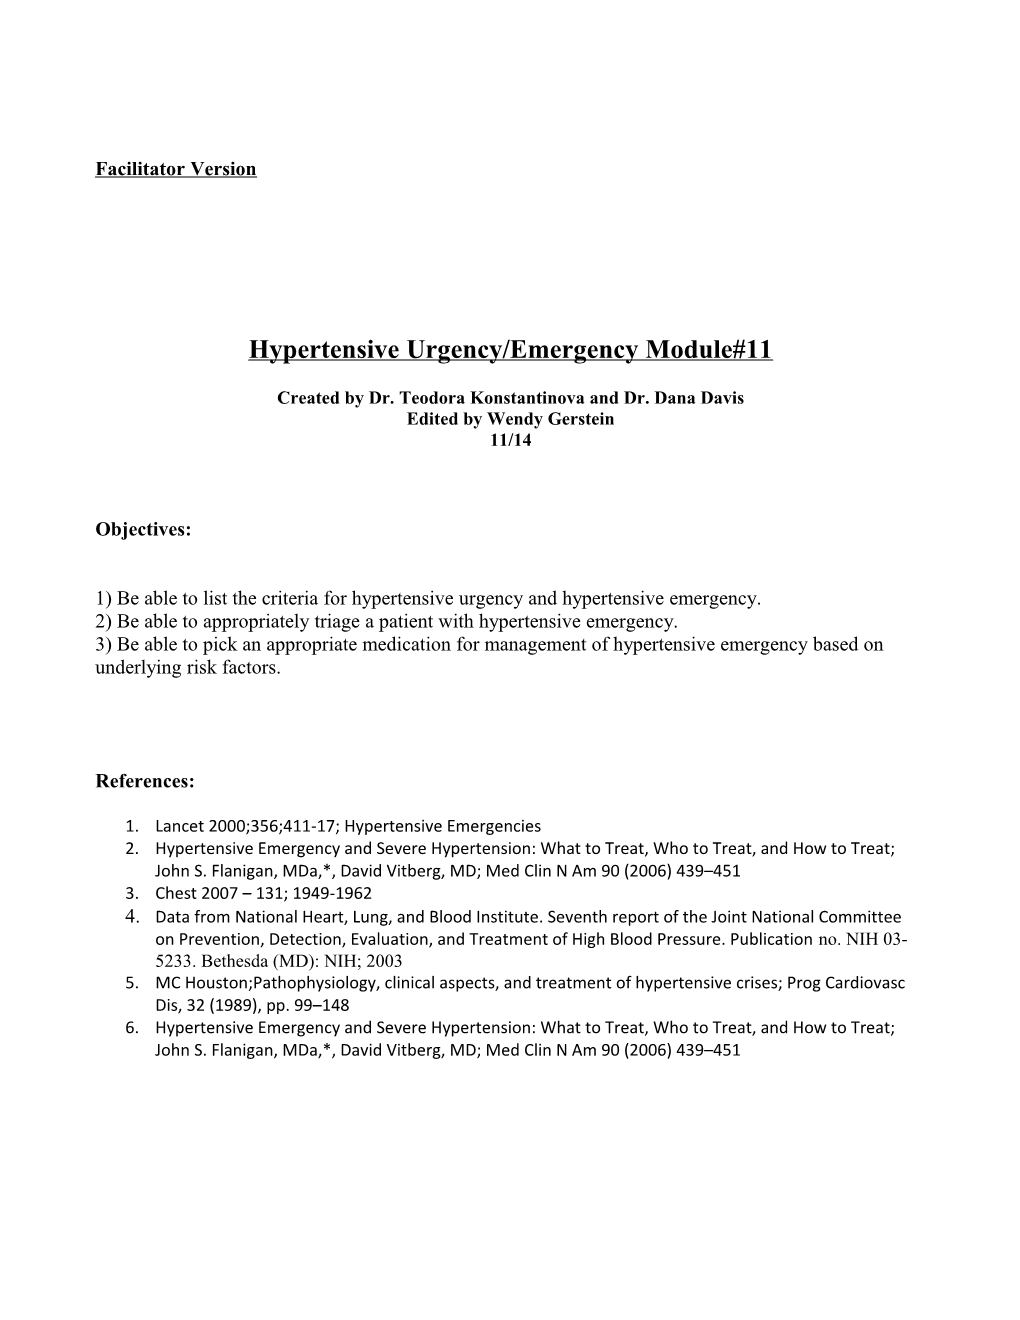 Hypertensive Urgency/Emergency Module#11